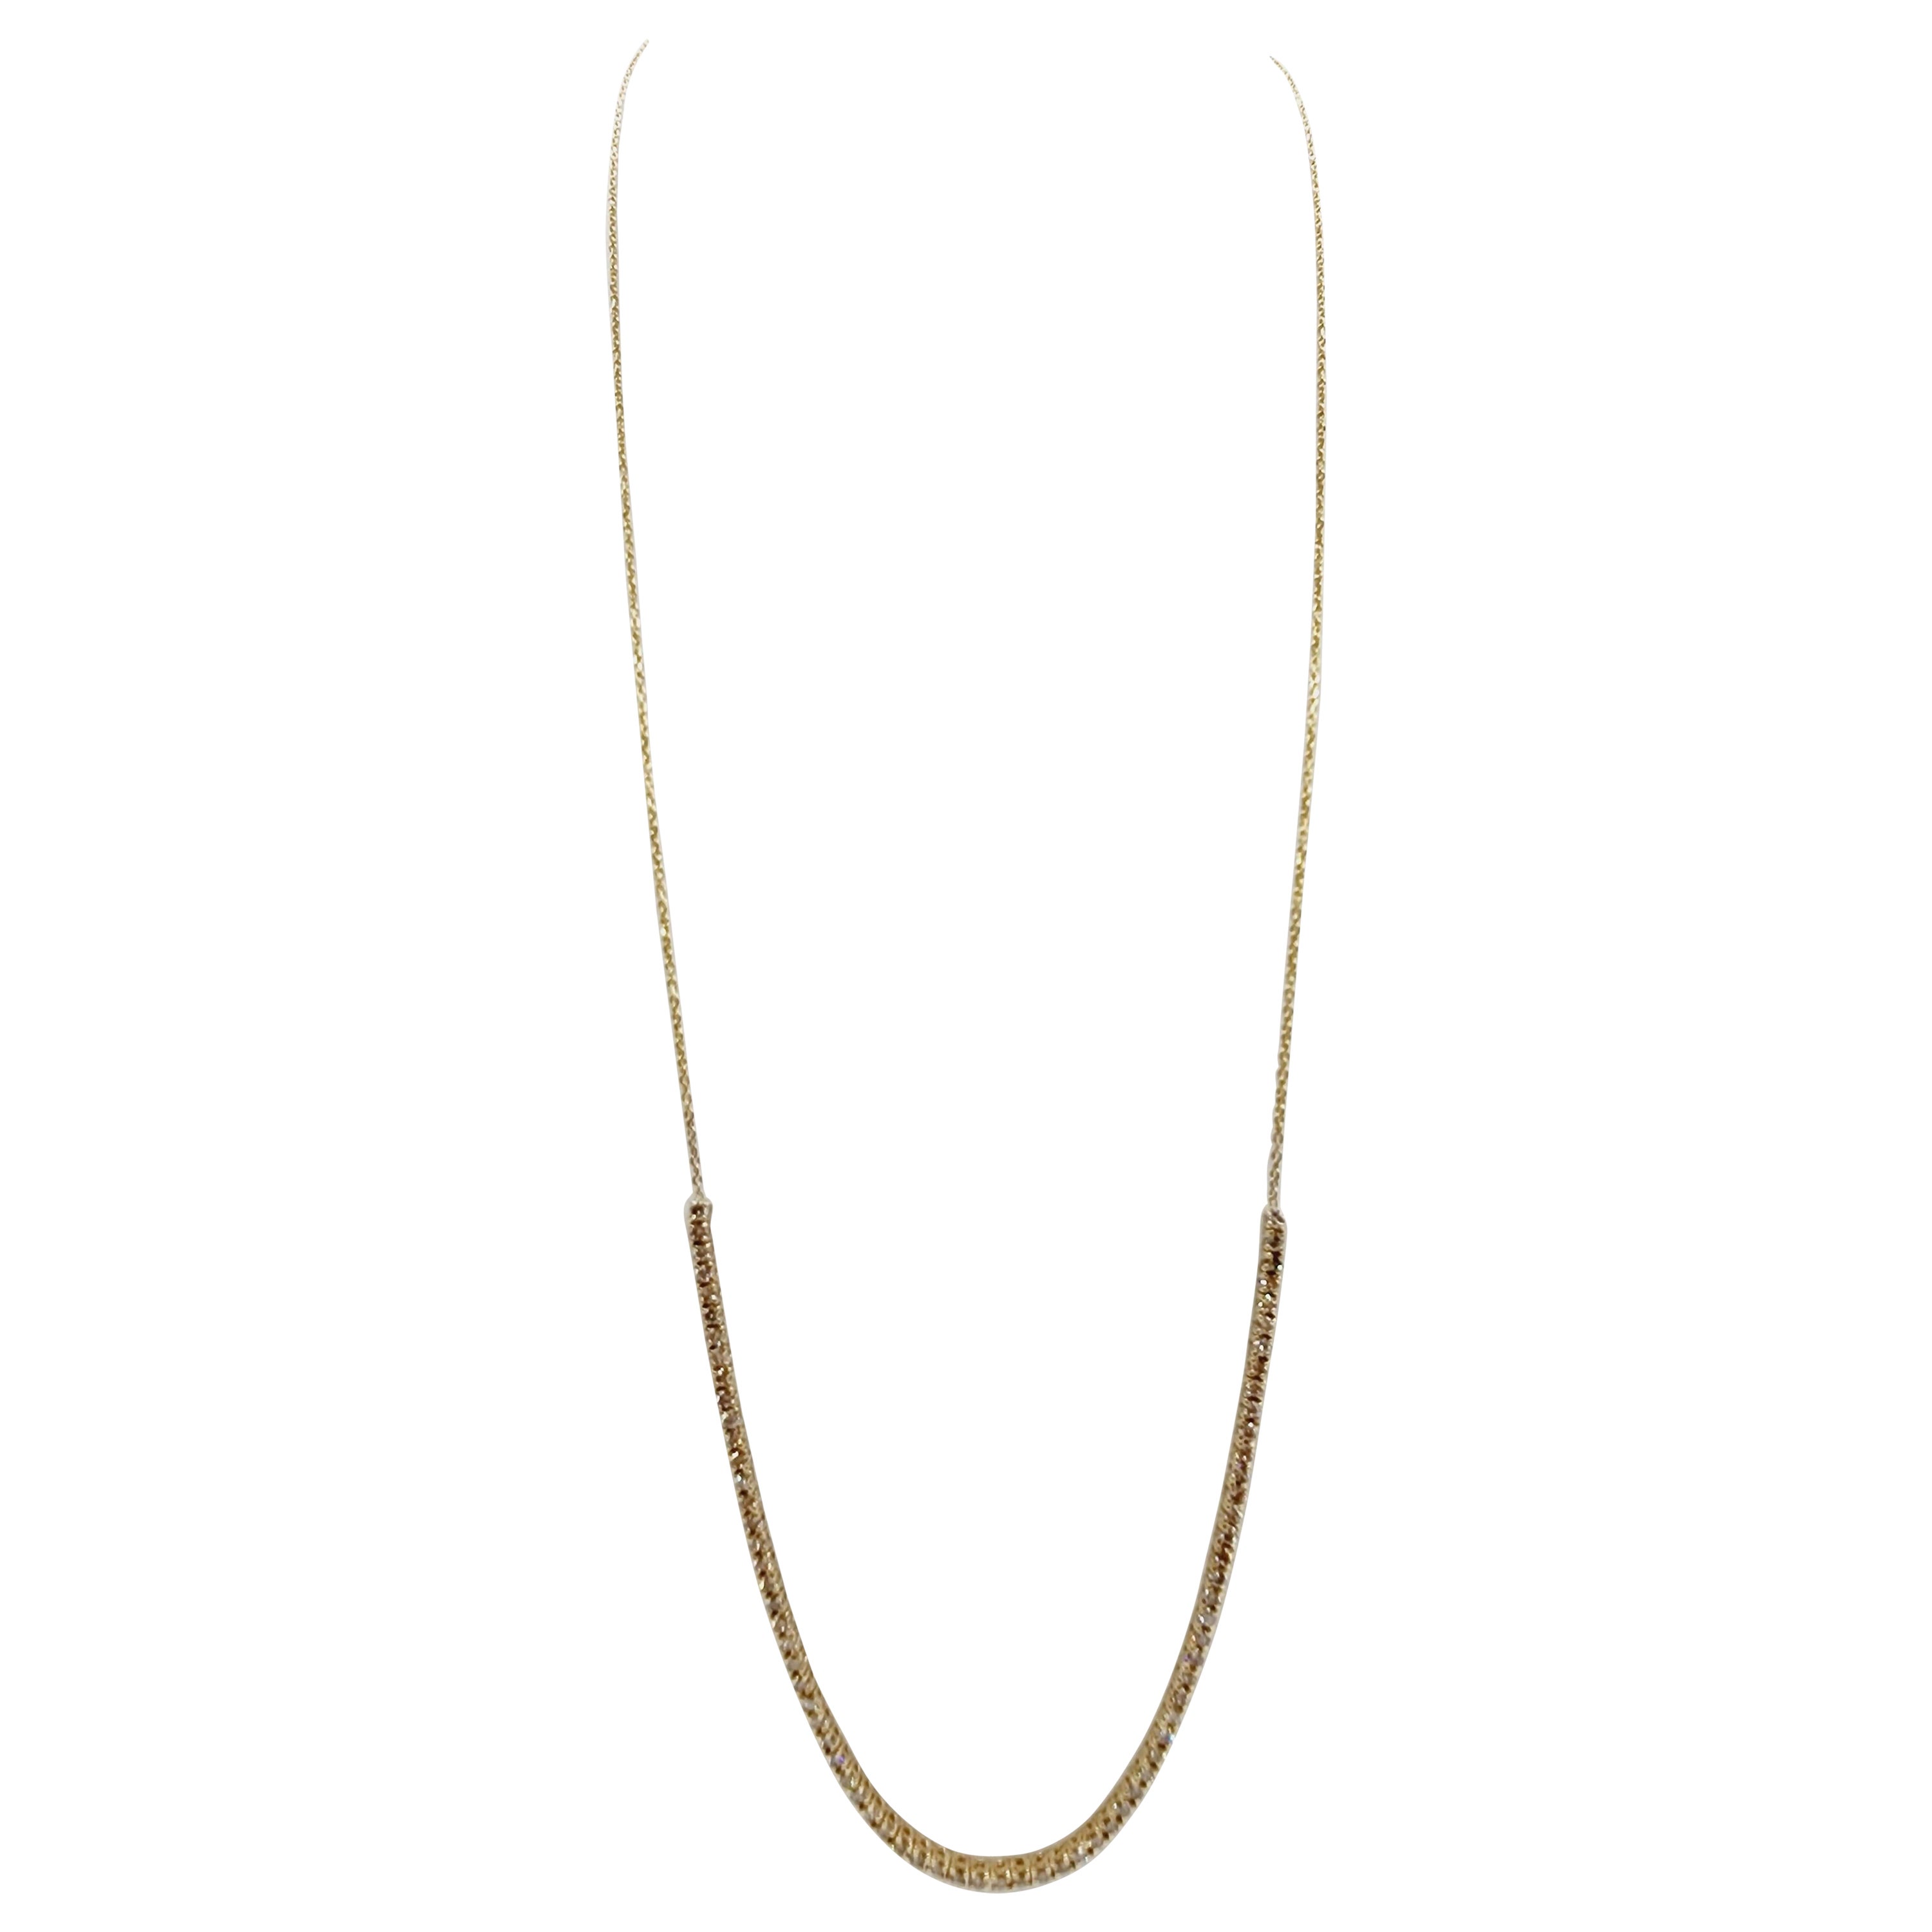 1.67 Carat Mini Diamond Necklace Chain 14 Karat Yellow Gold 23'' (Chaîne de collier en or jaune 14 carats)